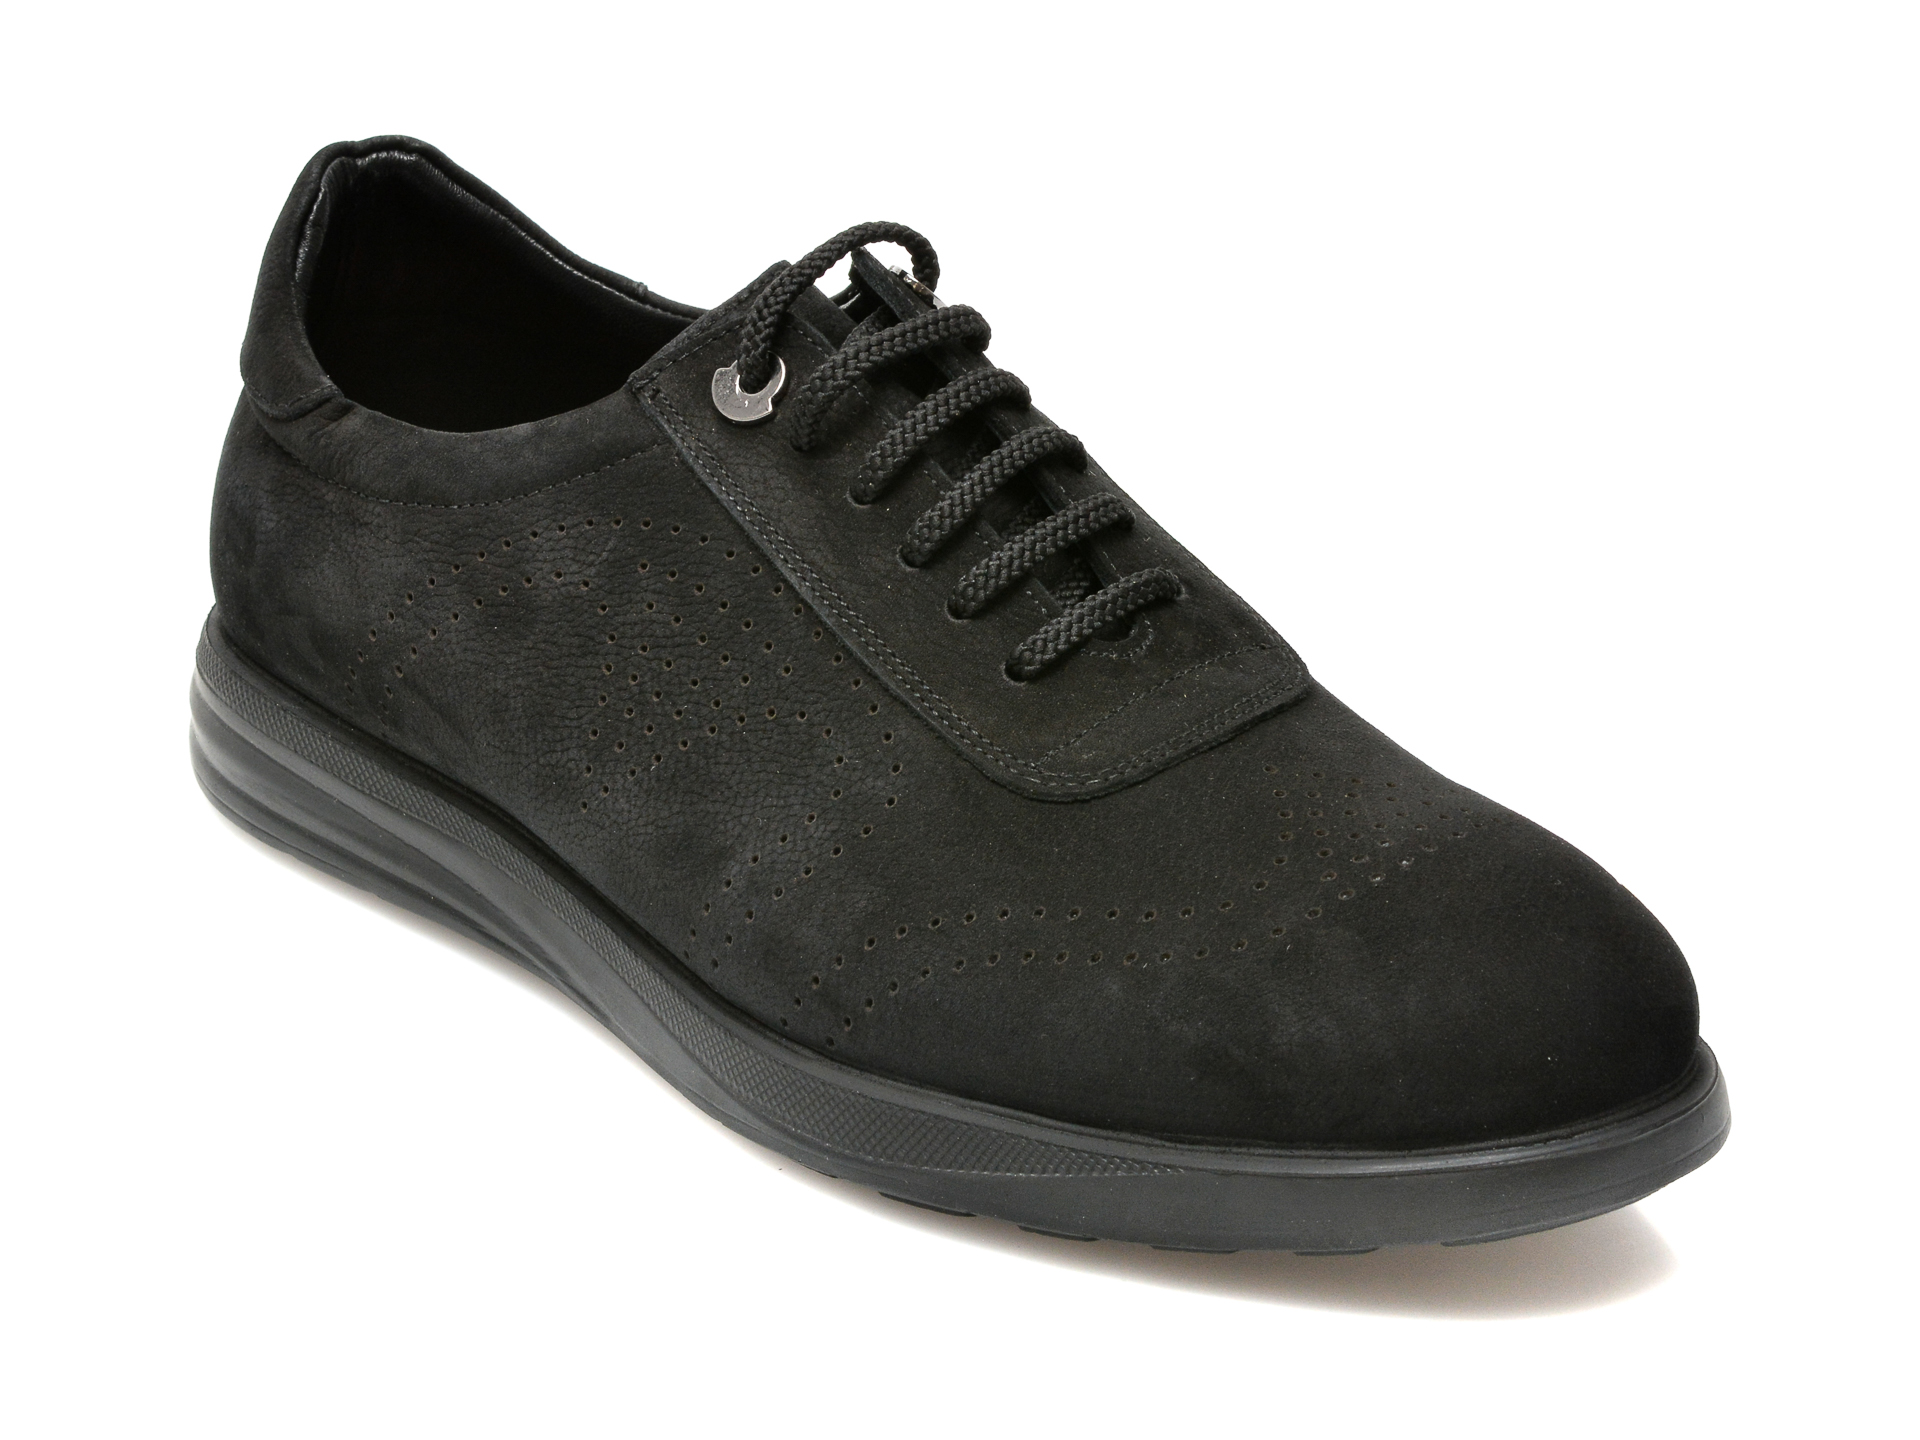 Pantofi OTTER negri, E881, din nabuc 2023 ❤️ Pret Super Black Friday otter.ro imagine noua 2022